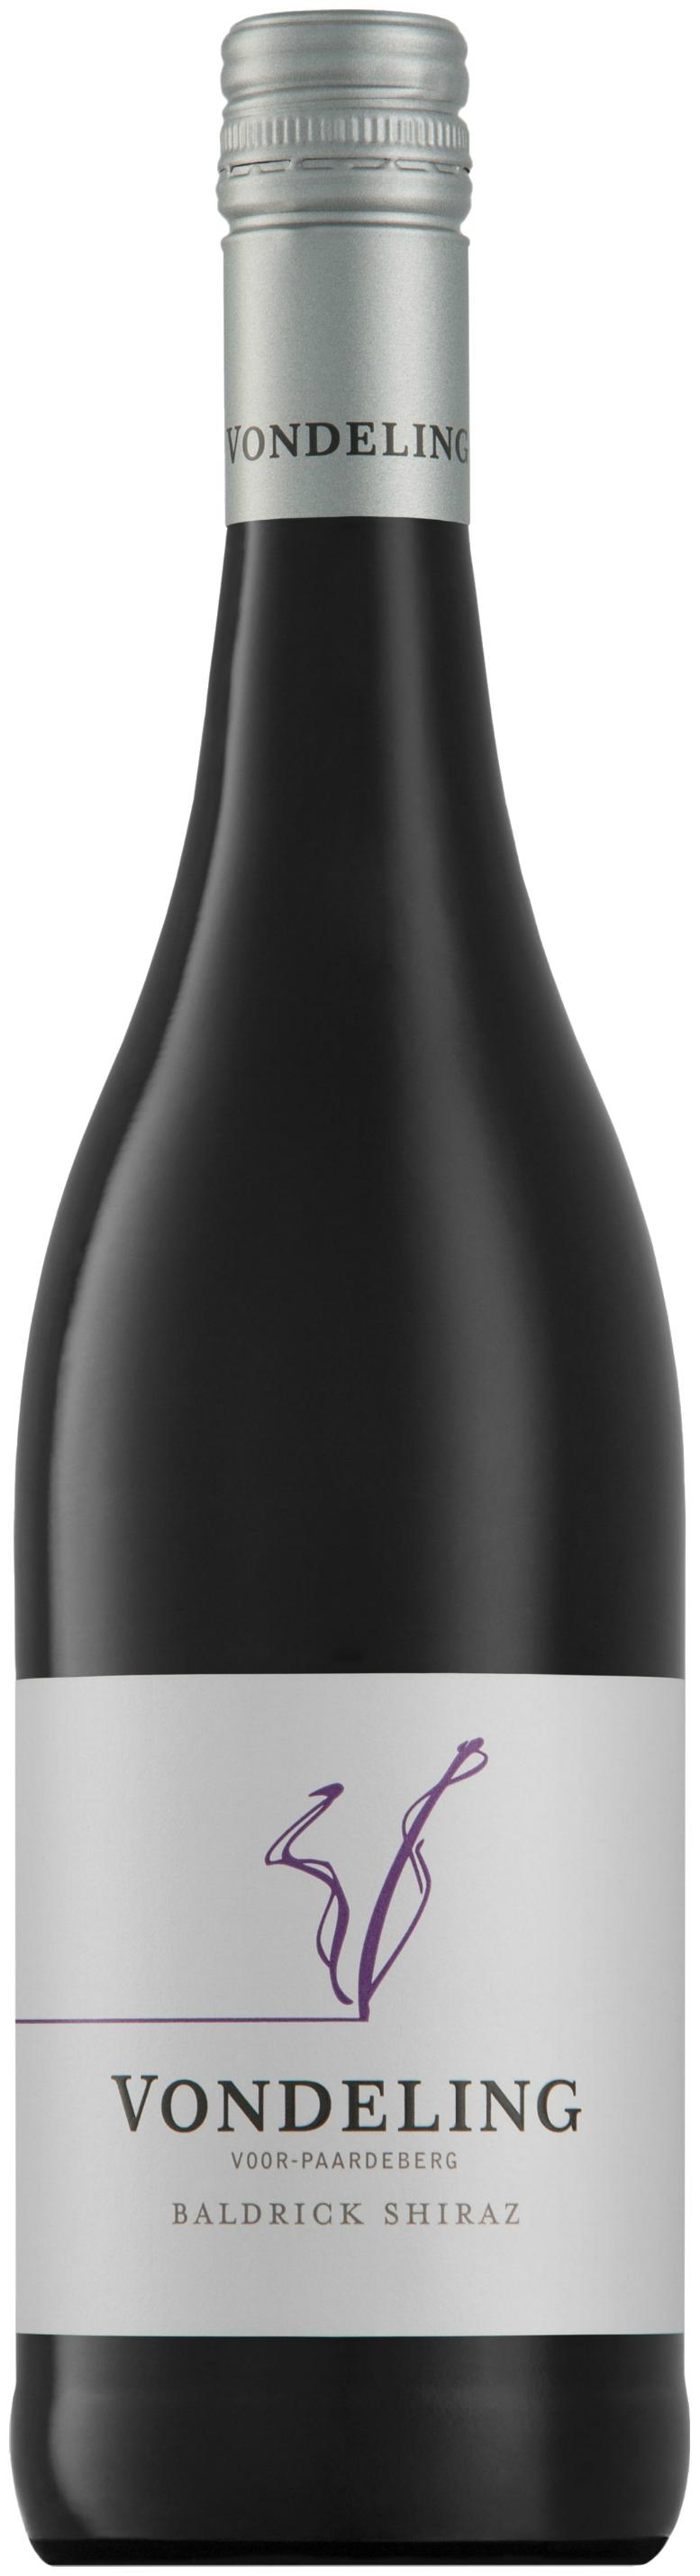 Vondeling Baldrick Shiraz | Wines Paarl) Premium Curry Südafrika, oHG (Rotwein